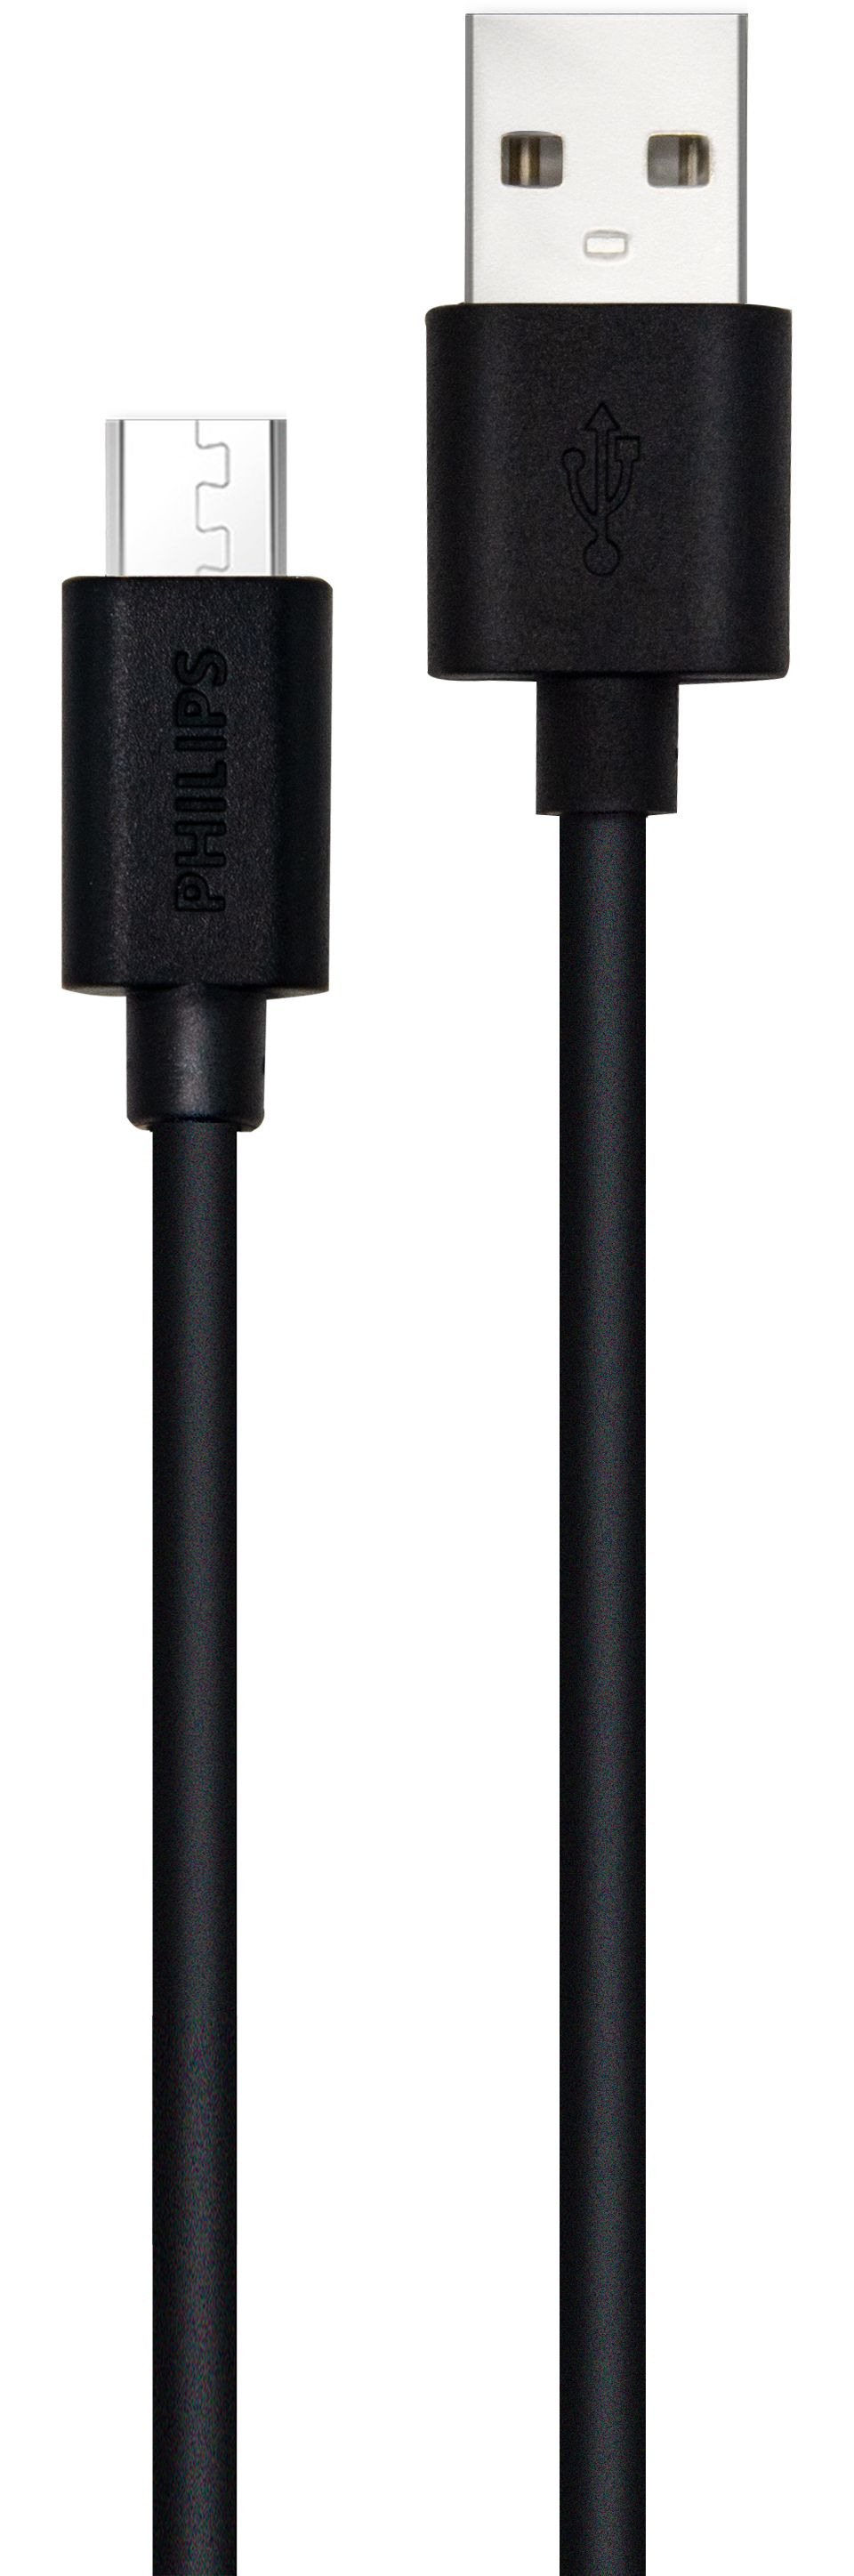 1,2 m-es USB/Mikro USB kábel